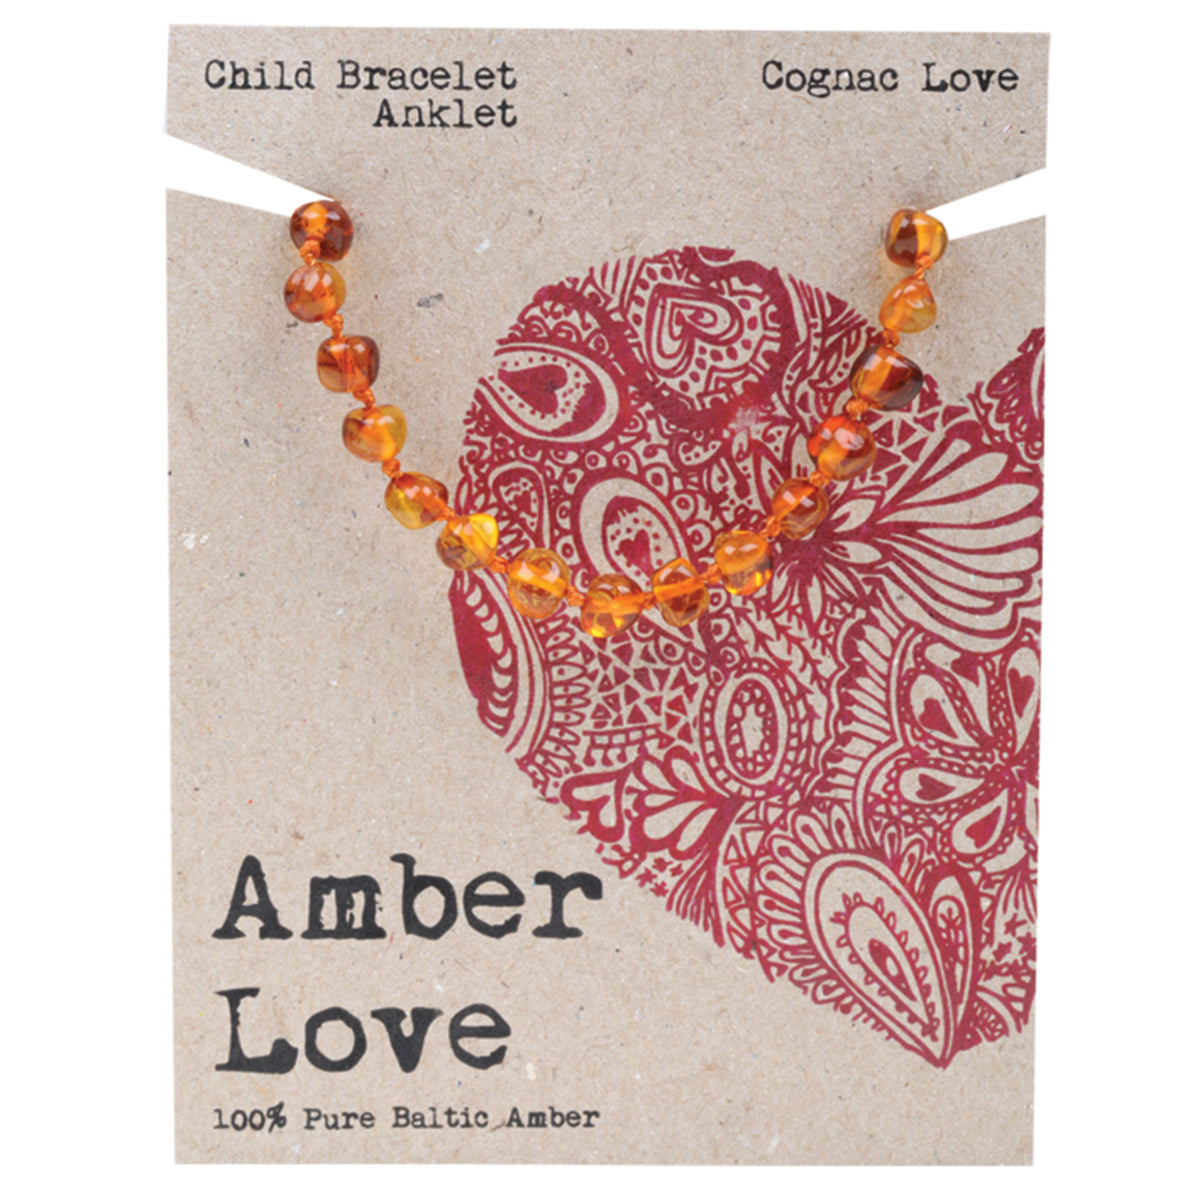 Amber Love Child Bracelet Anklet 14cm